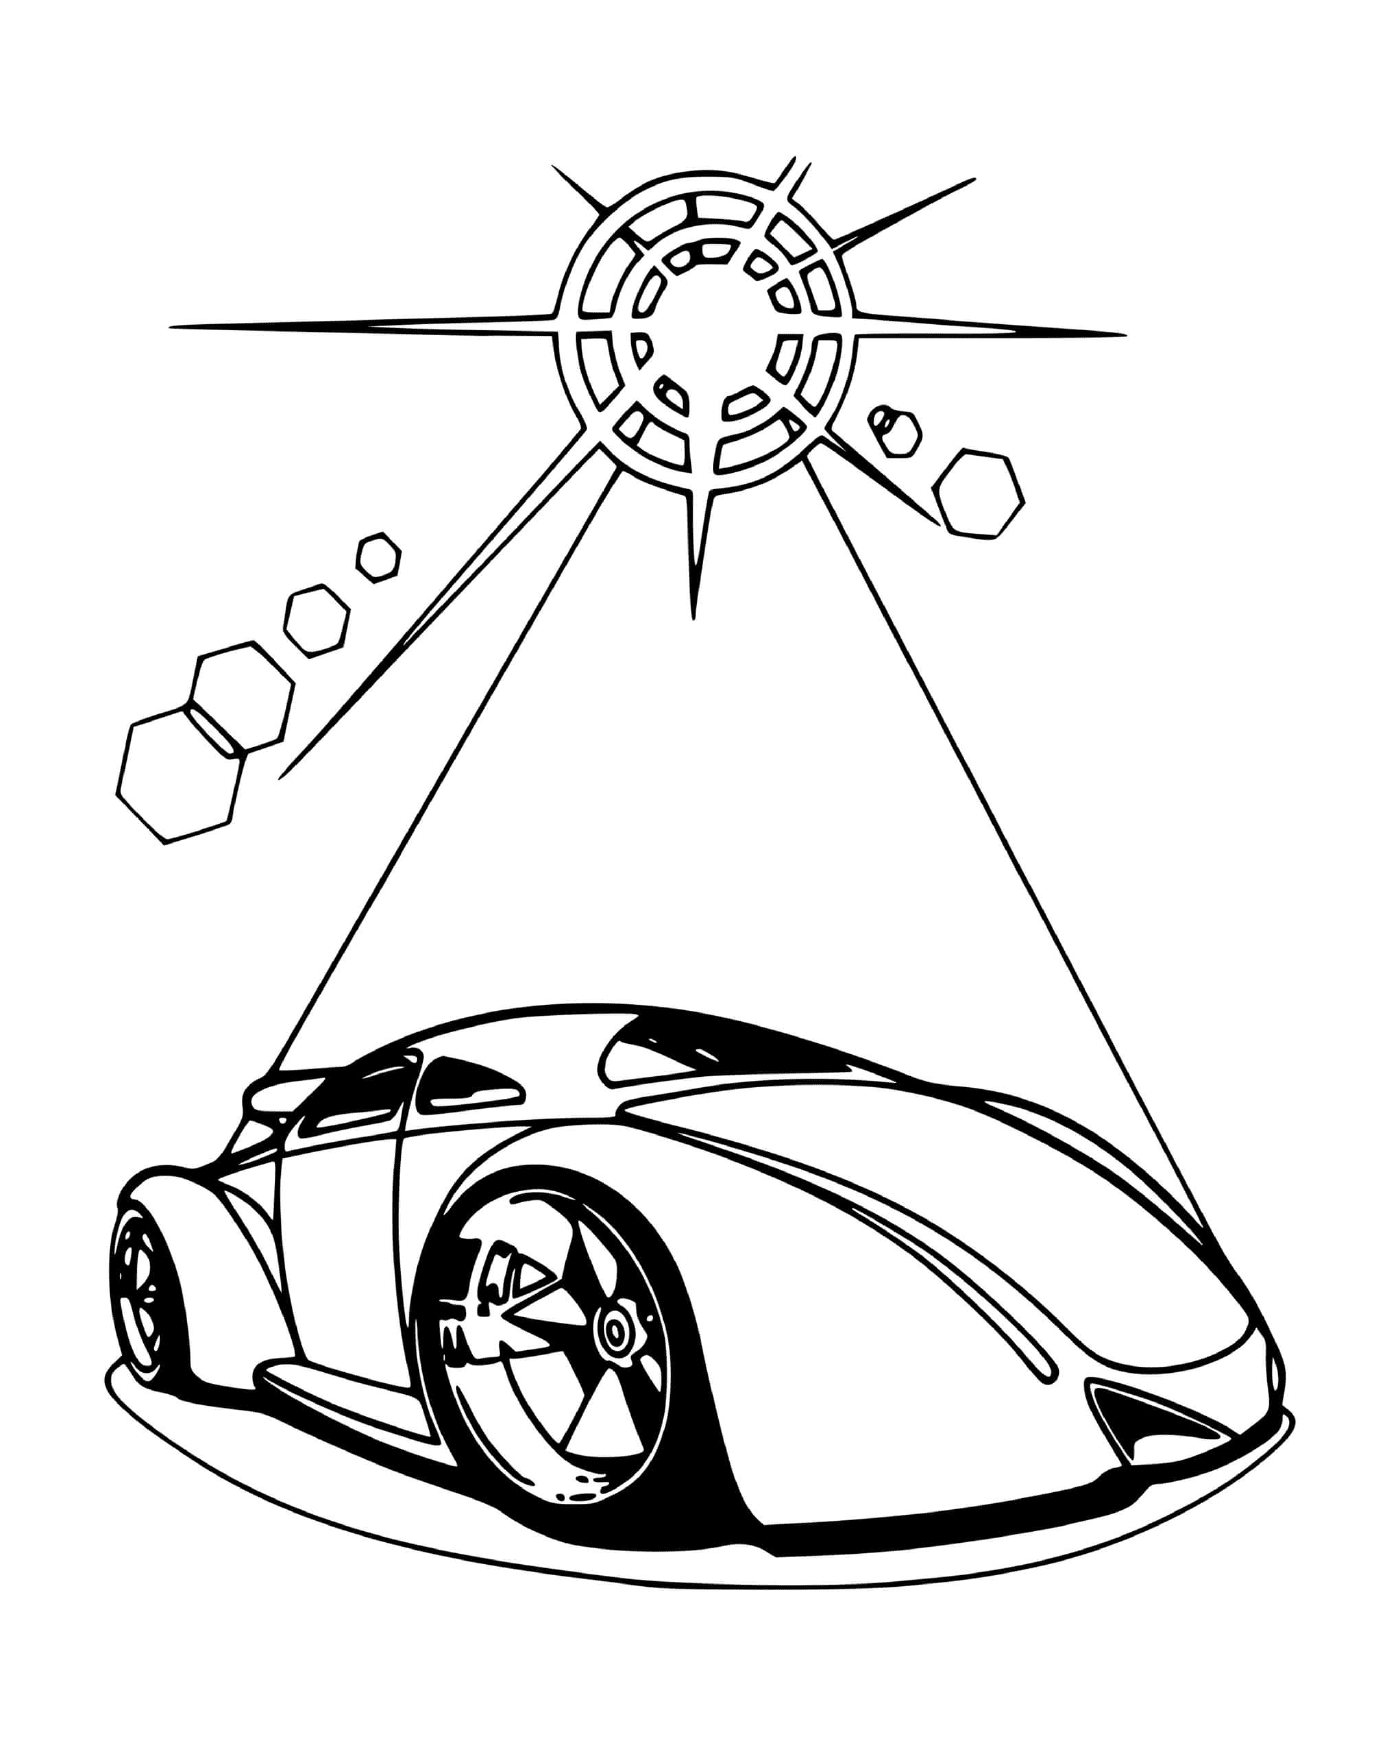  Auto de ruedas calientes futuristas 